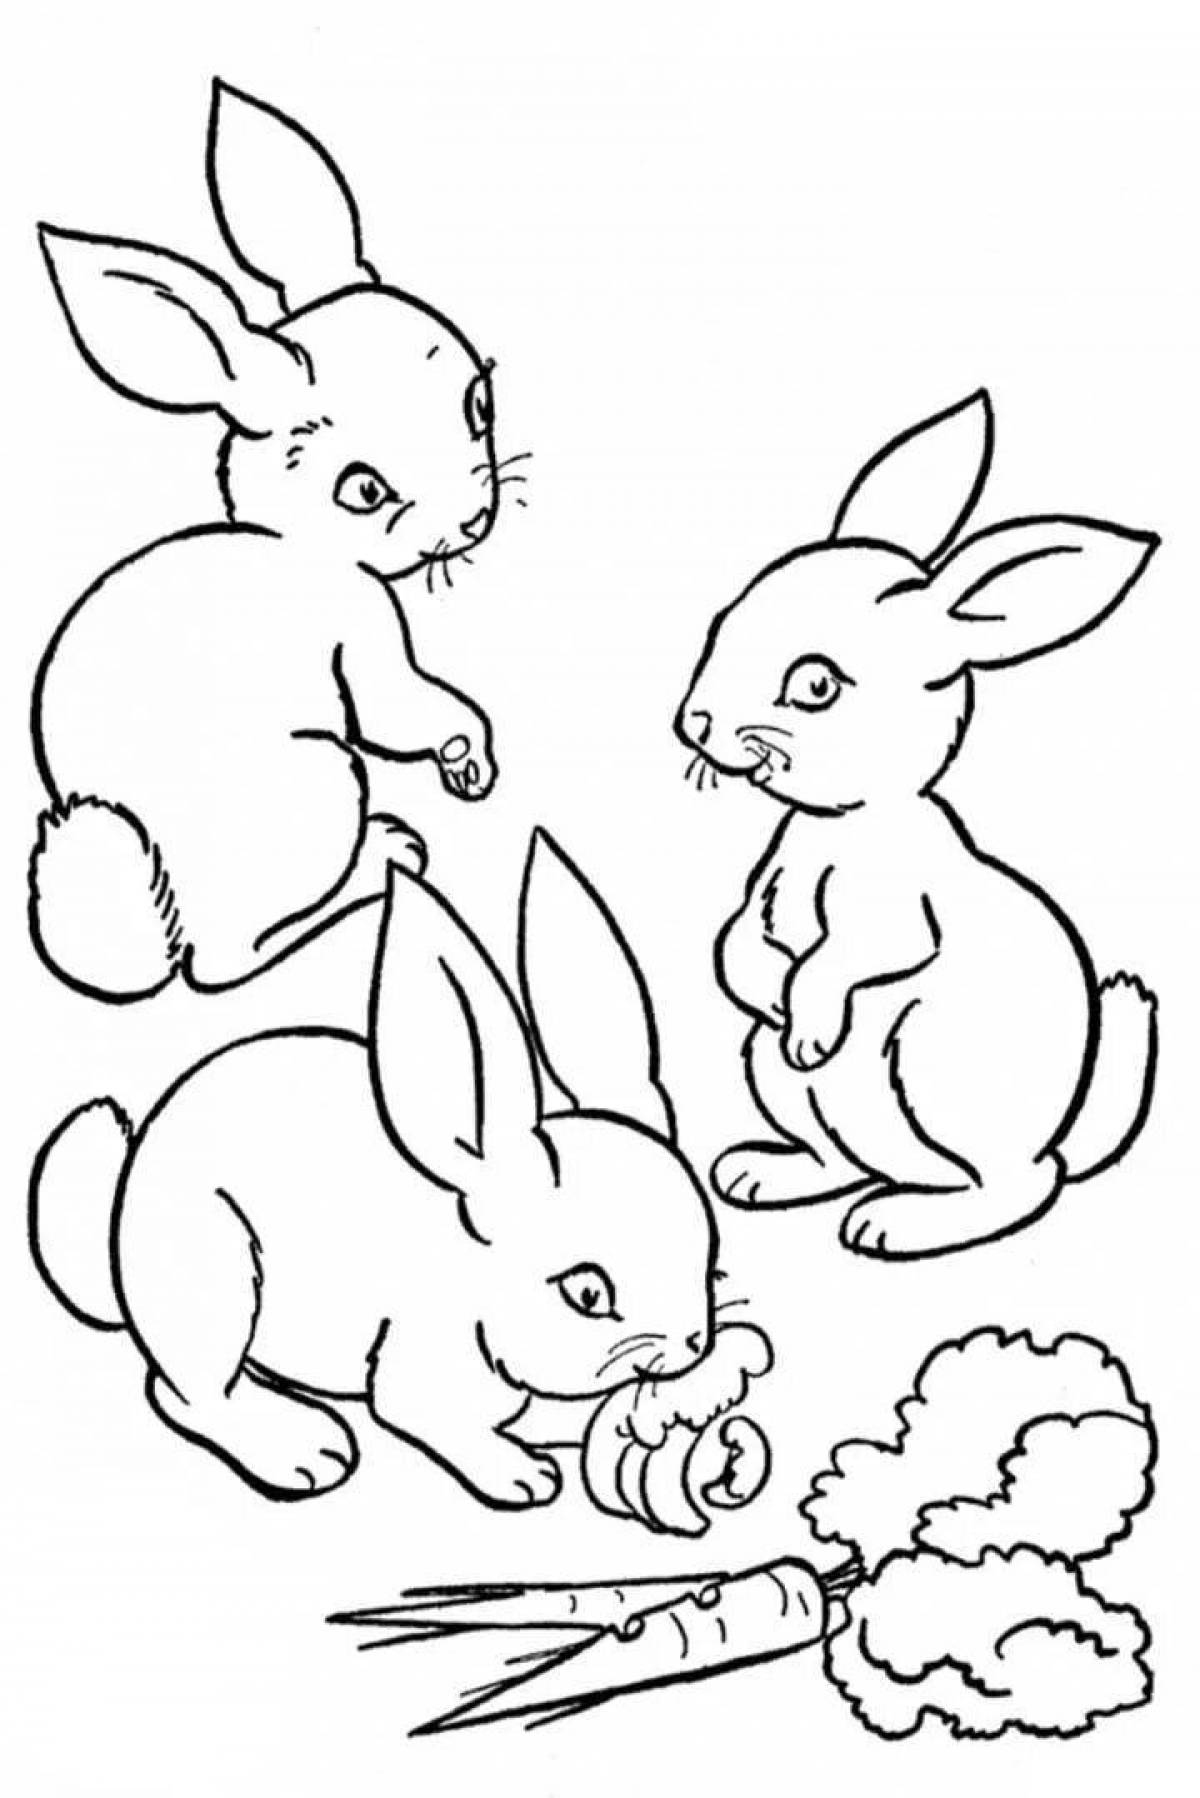 Рисунок радостного кролика